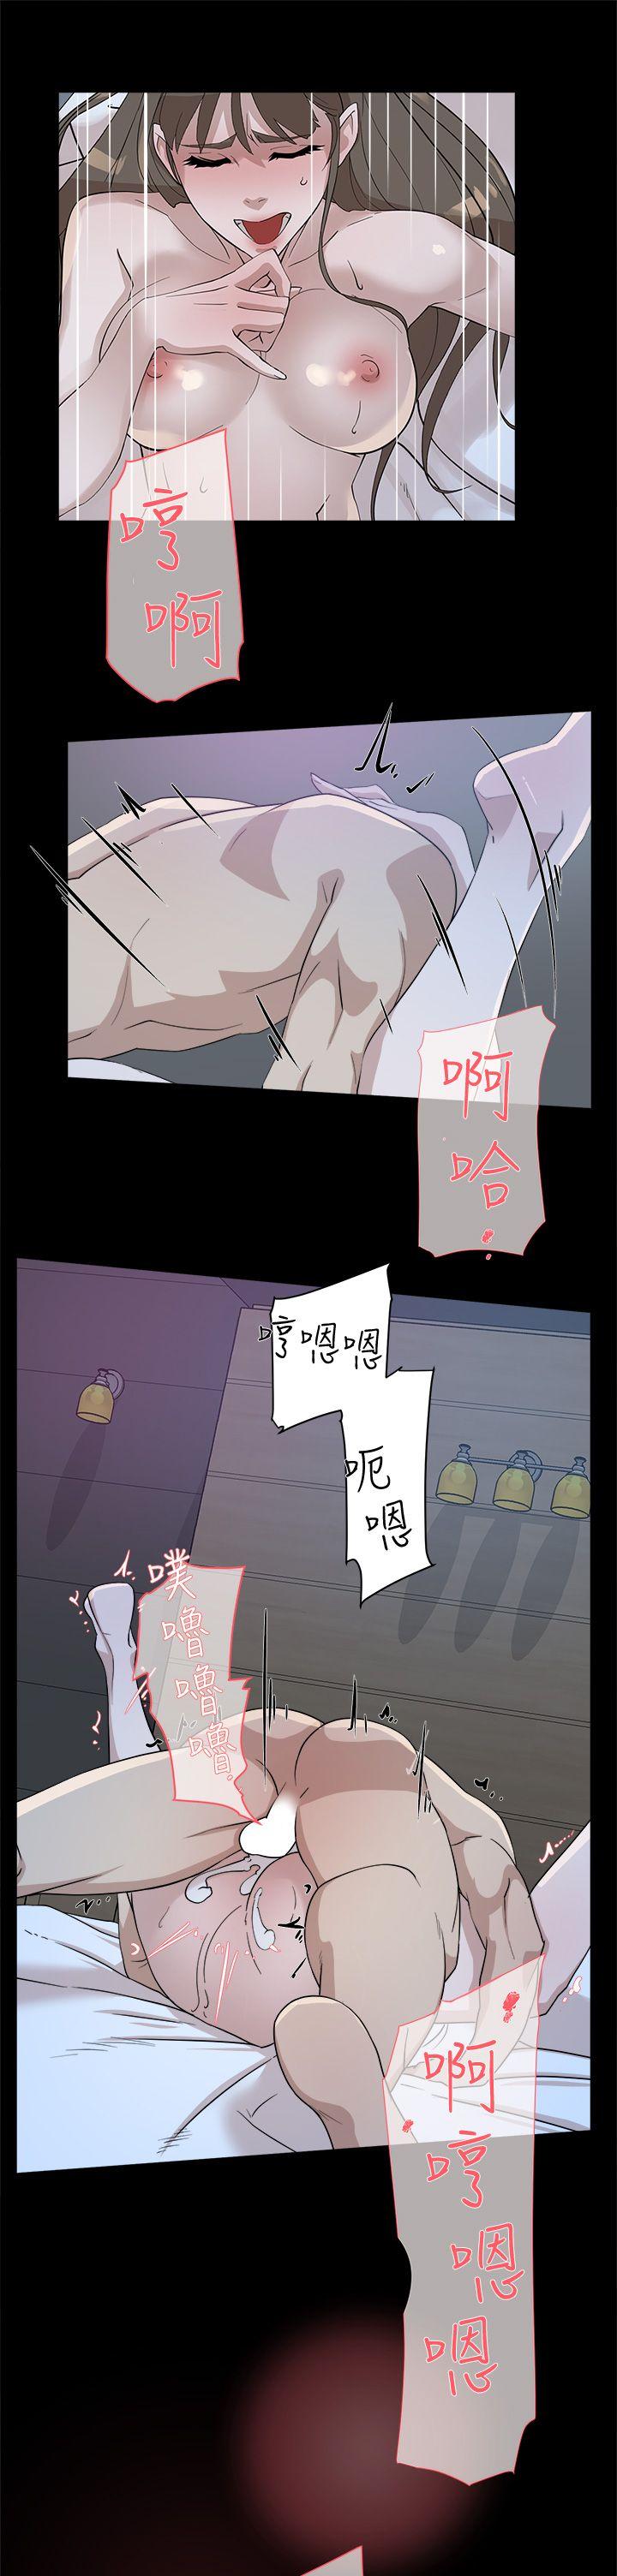 韩国污漫画 她的高跟鞋(無刪減) 第67话-和世润截然不同的第一次 25